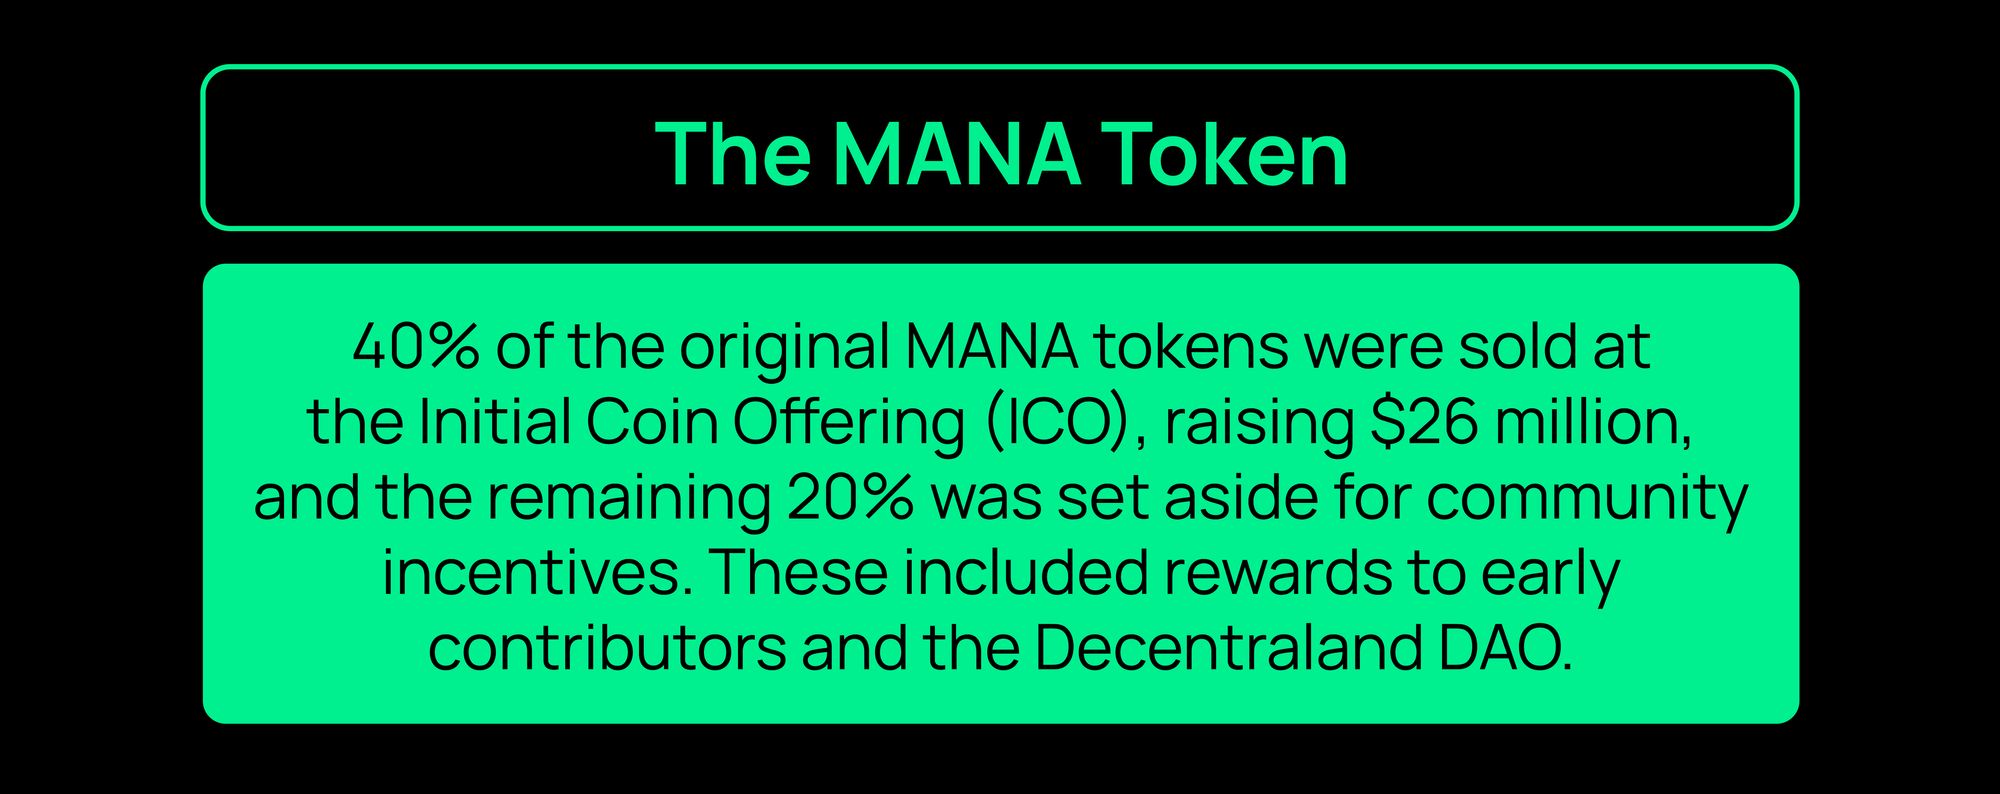 The MANA token